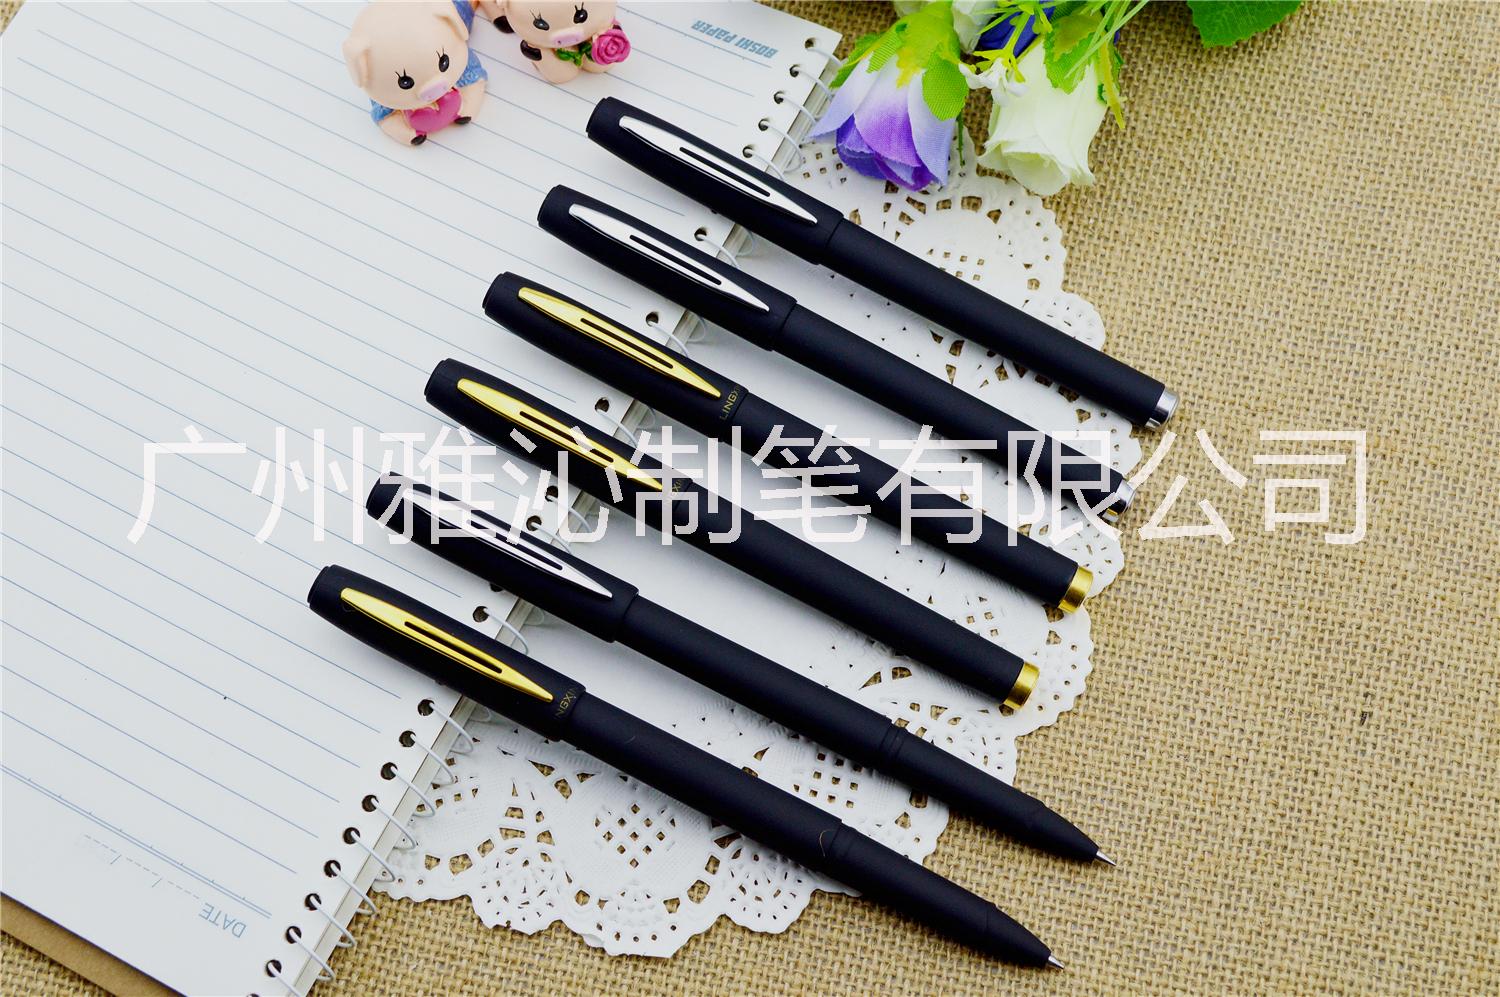 喷胶中性笔厂家1000支起订印刷广告 喷胶中性笔厂家雅沁制笔